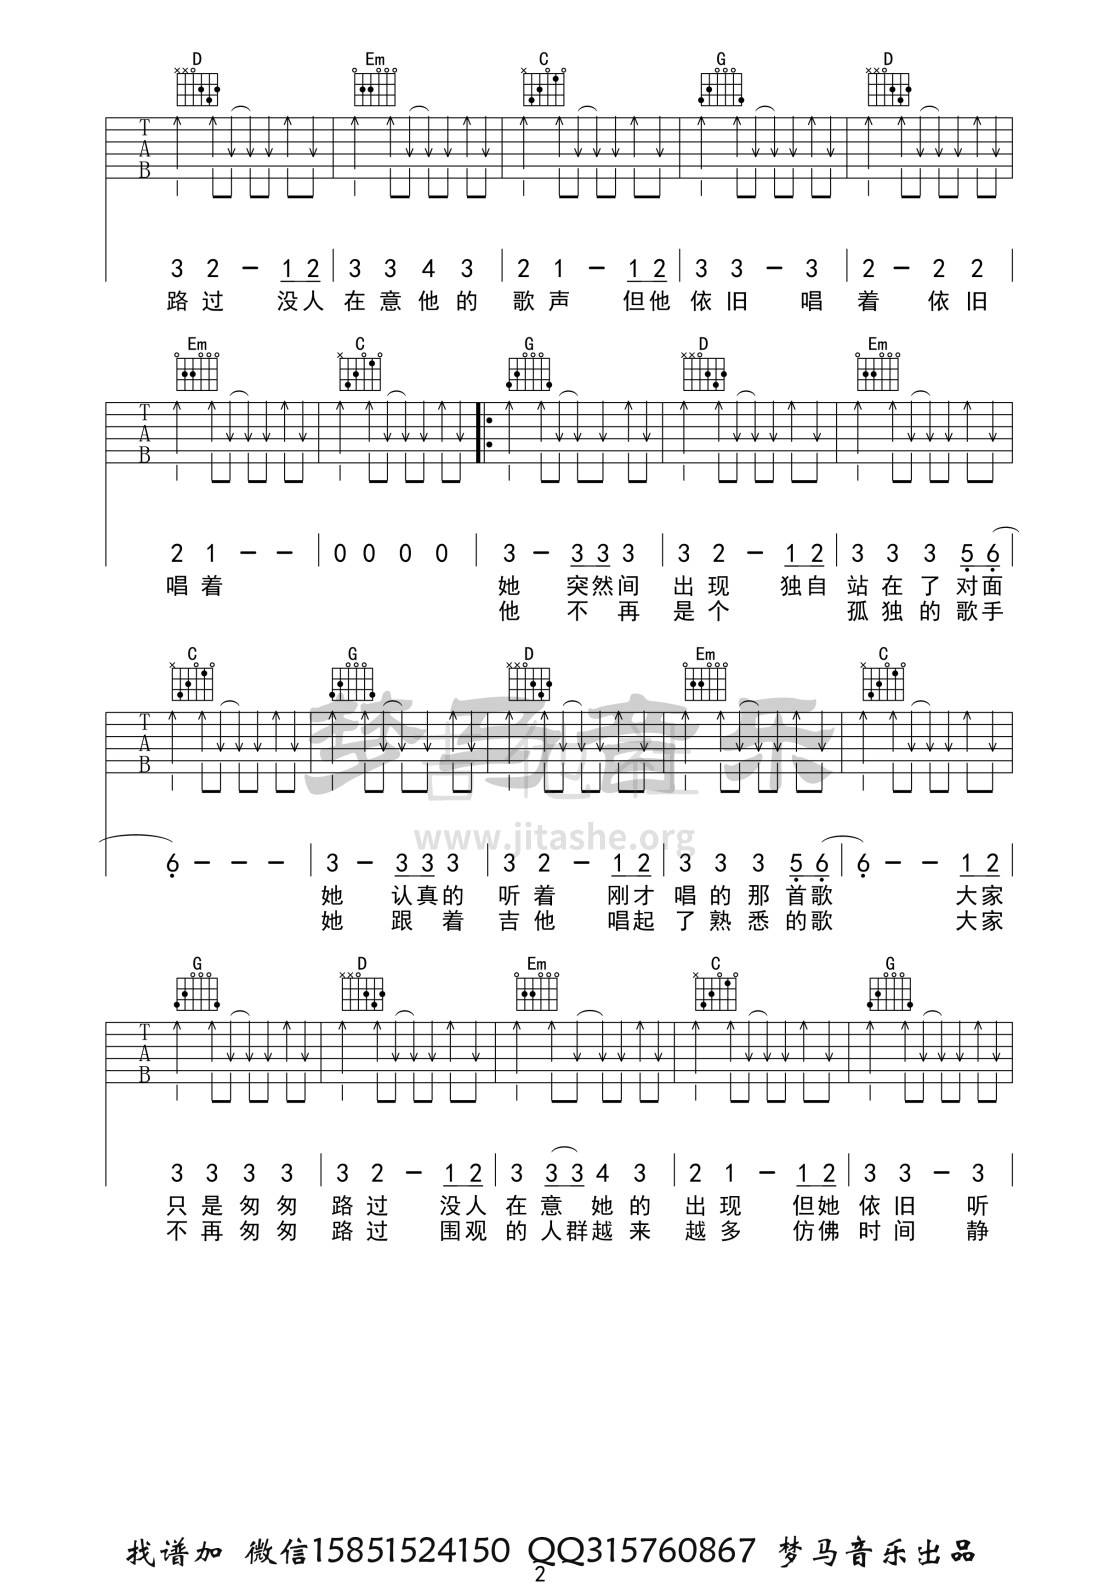 打印:步行街的吉他手吉他谱_张闯_步行街的吉他手-2.jpg